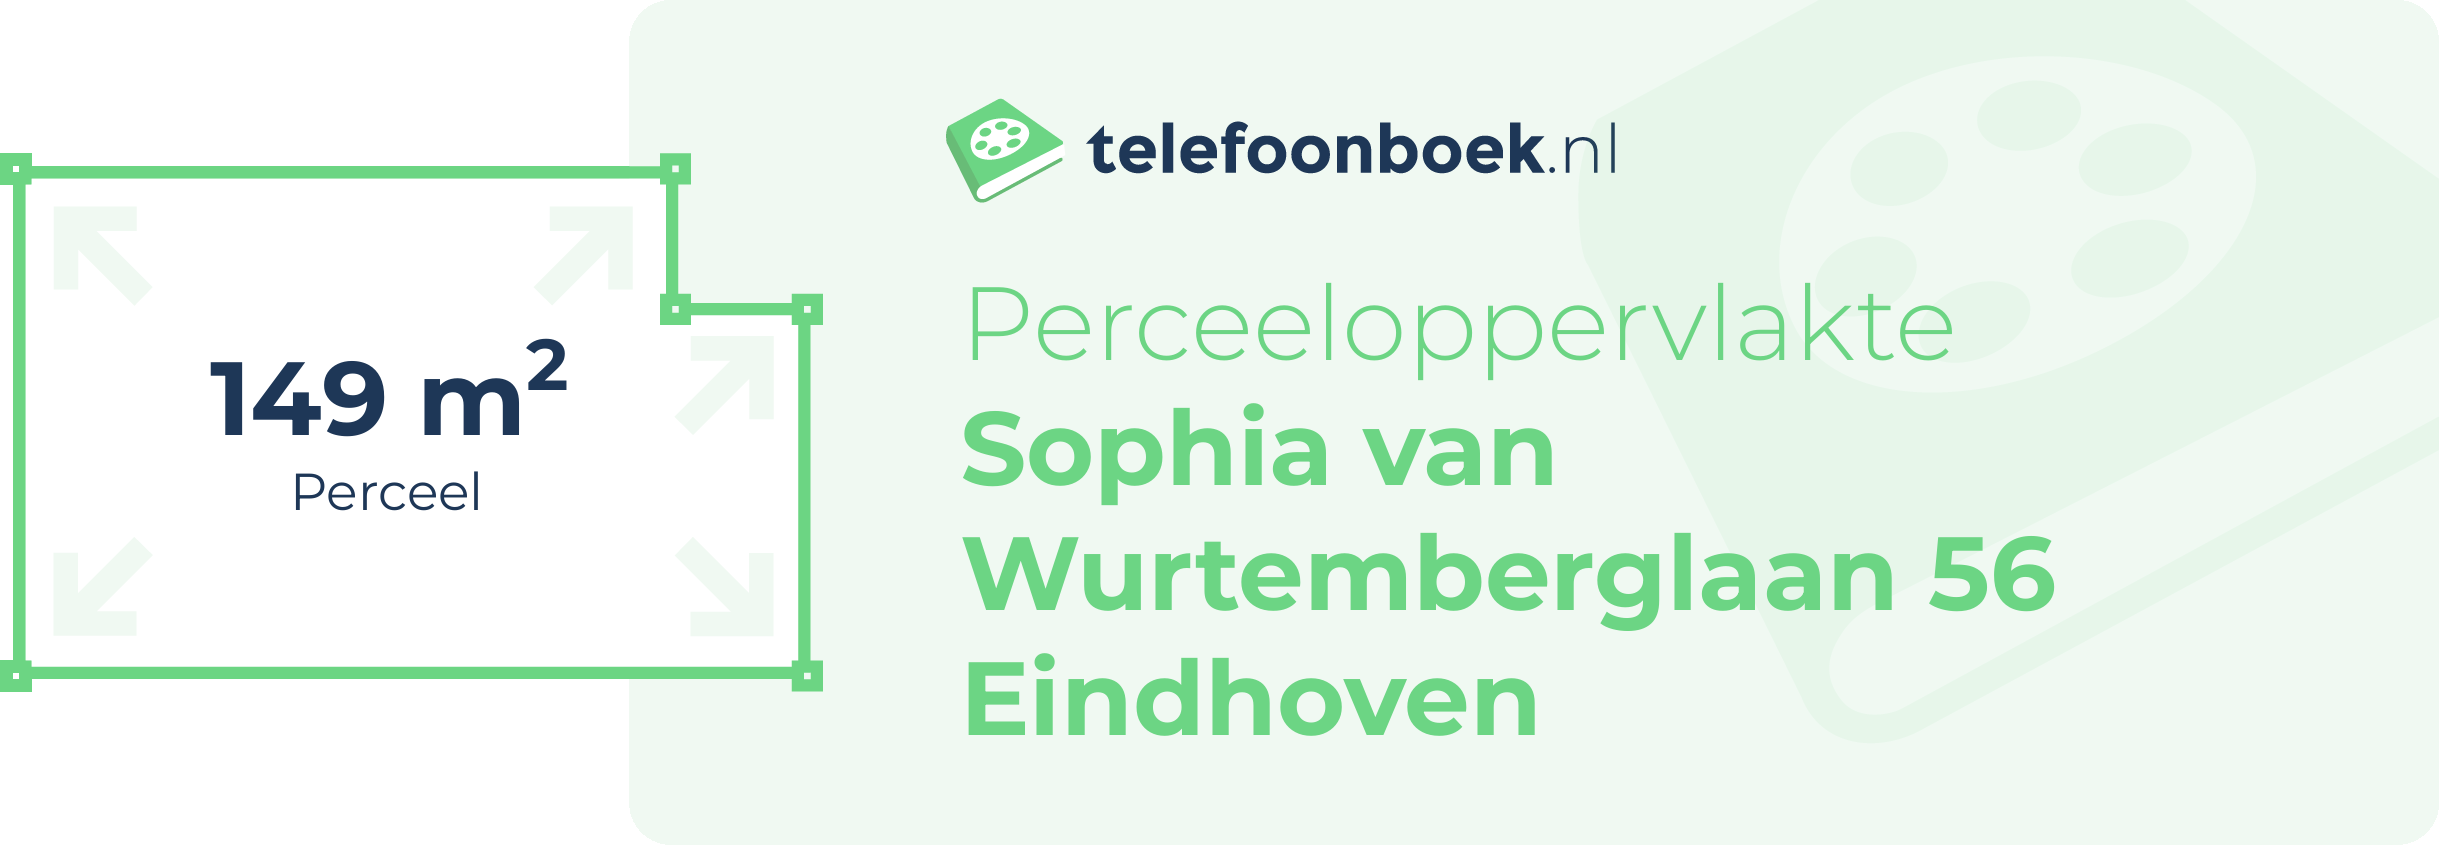 Perceeloppervlakte Sophia Van Wurtemberglaan 56 Eindhoven